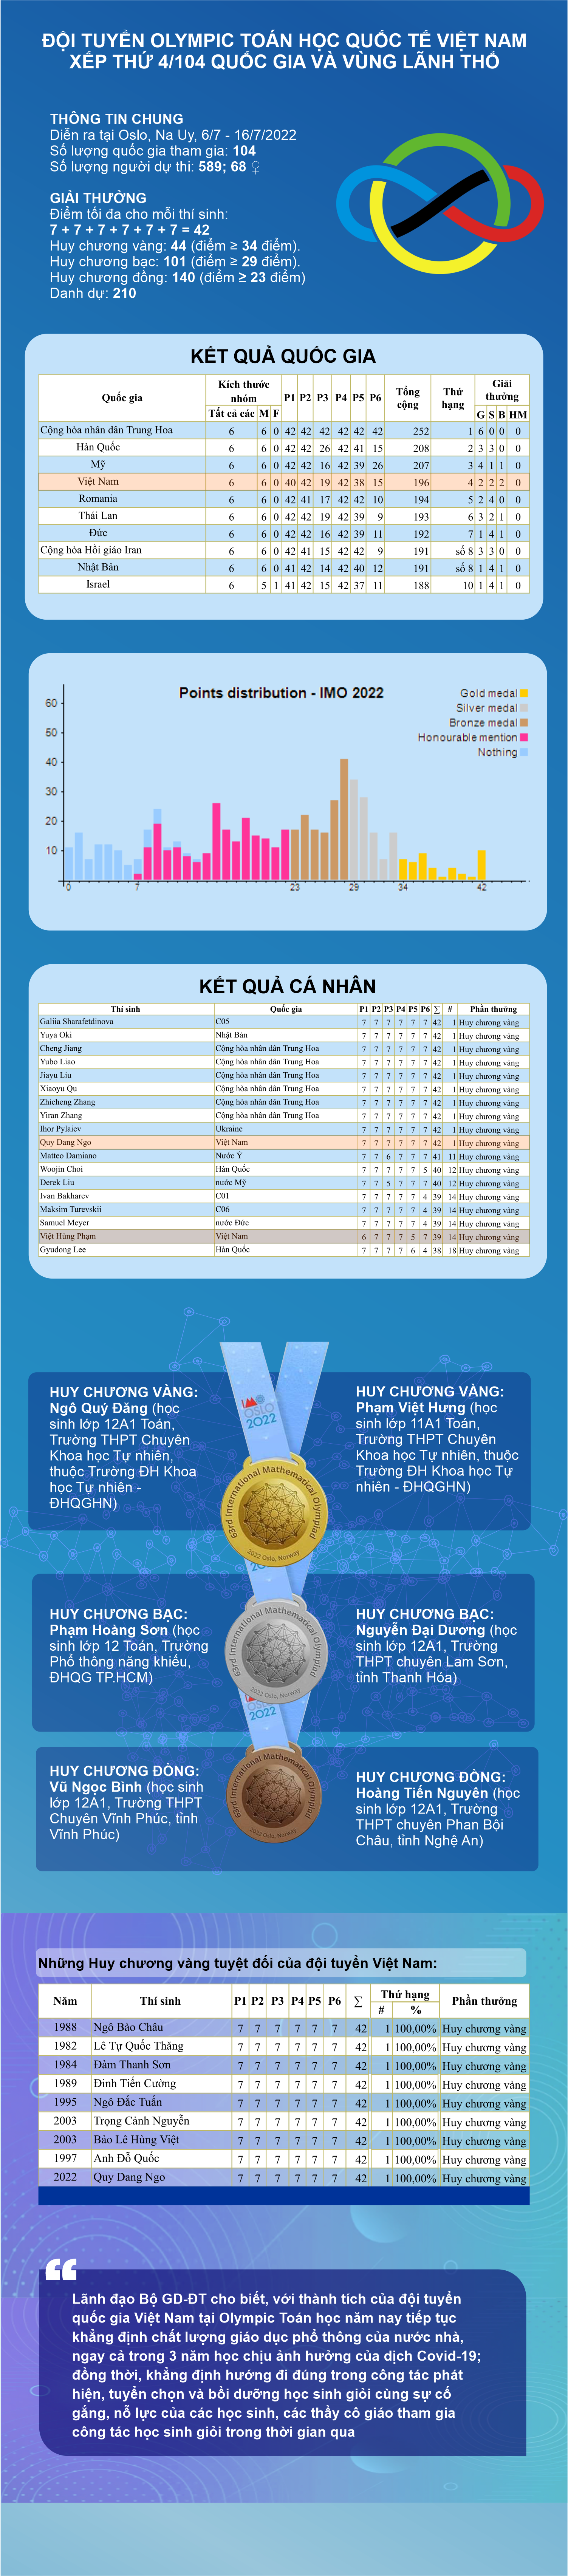 [Infographic] Đội tuyển Olympic Toán học quốc tế Việt Nam xếp thứ 4/104 quốc gia và vùng lãnh thổ - Ảnh 1.